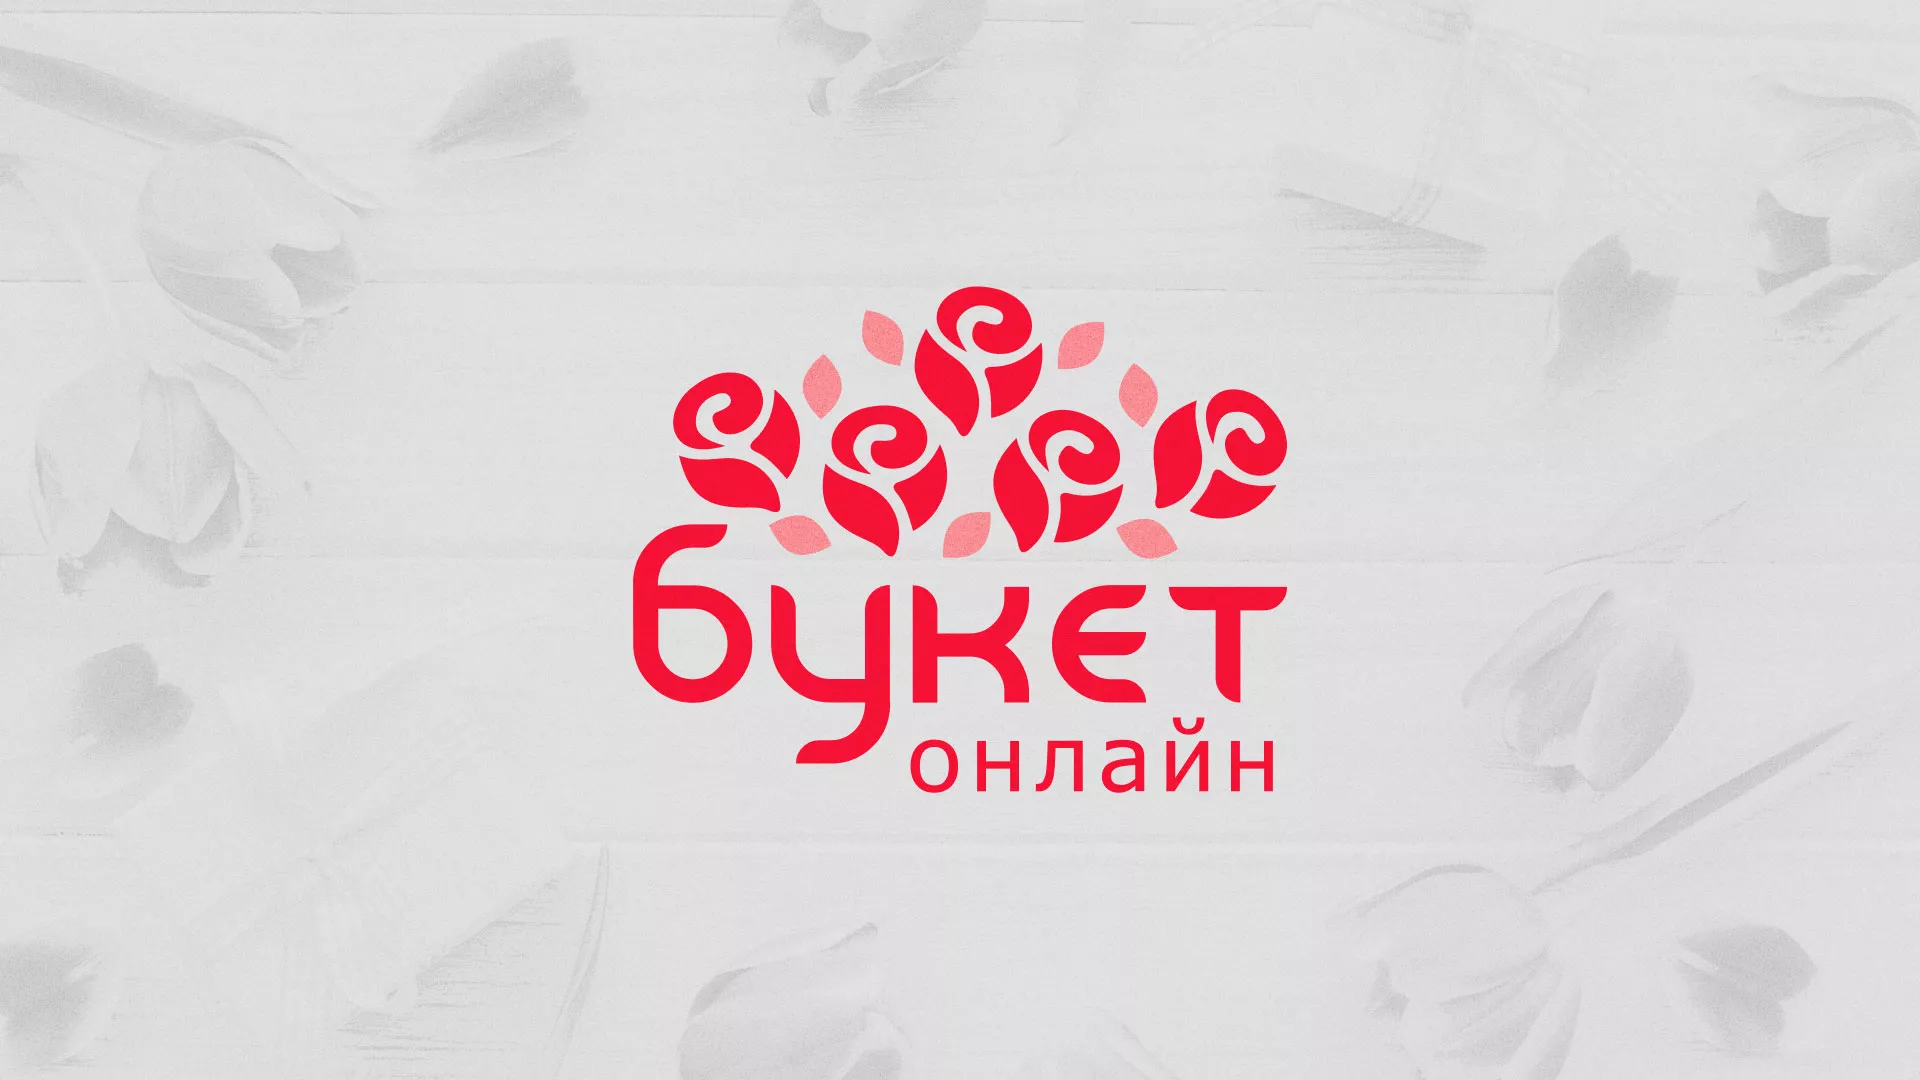 Создание интернет-магазина «Букет-онлайн» по цветам в Пушкине